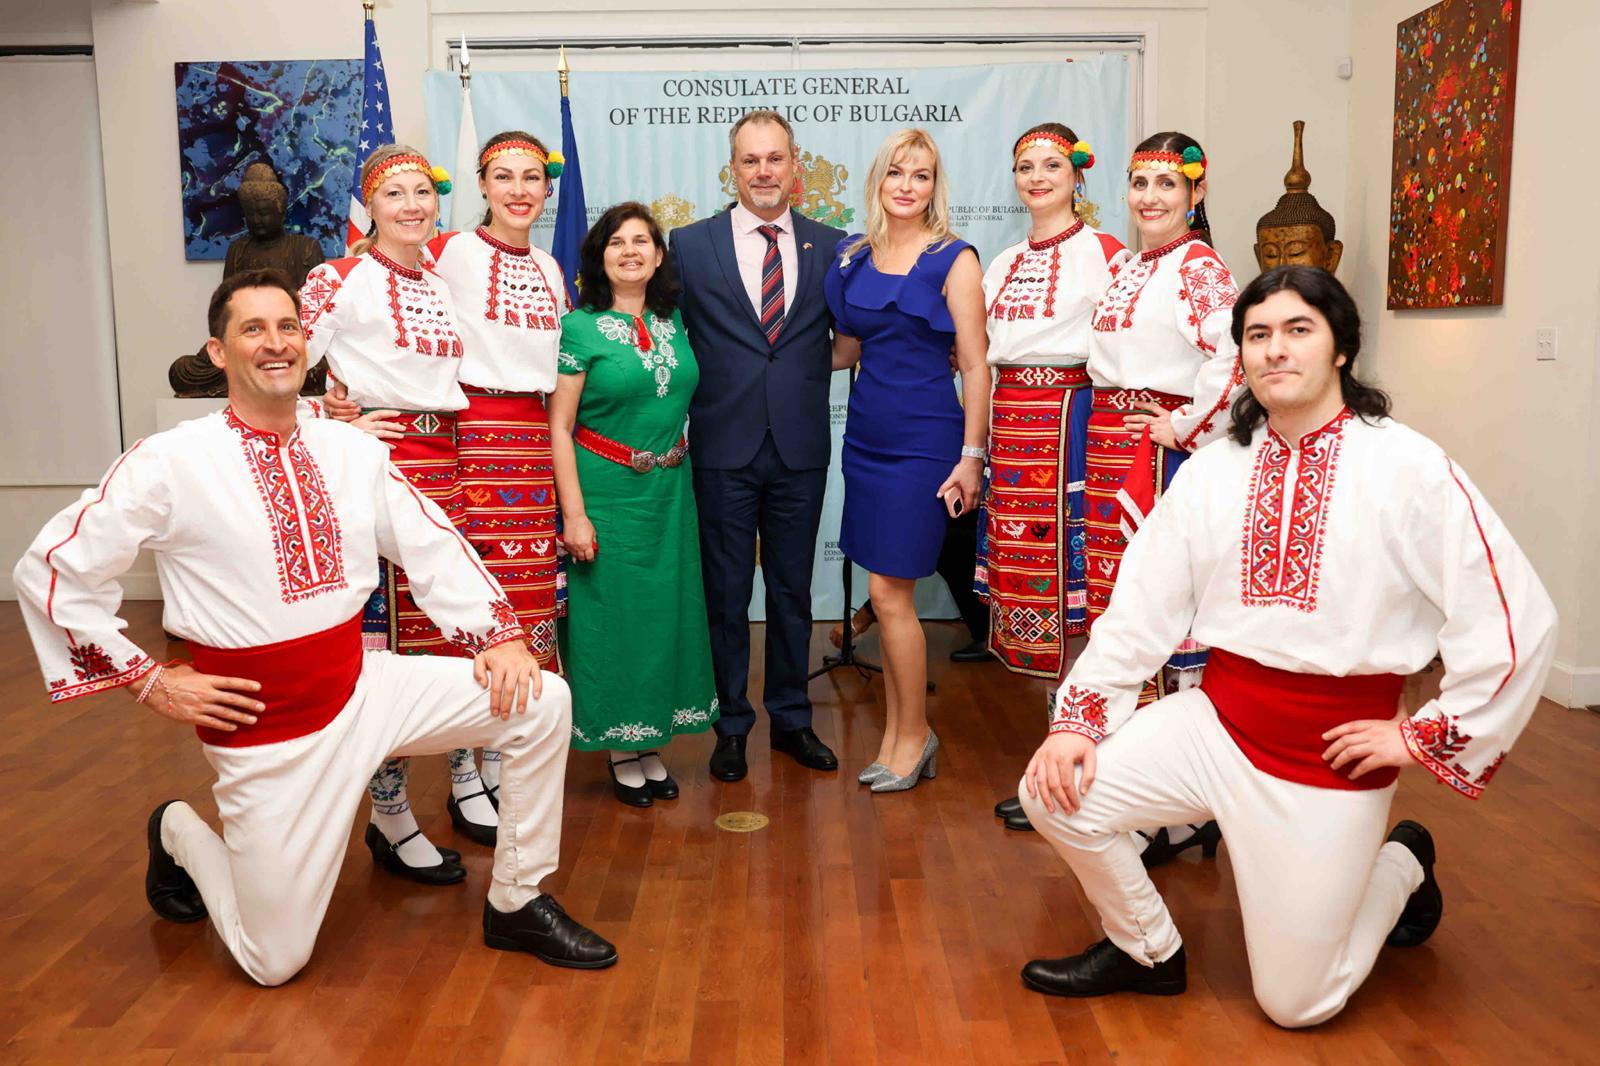 България и българската диаспора в Лос Анджелис получиха поредното признание по случай националния празник, 3-ти март 